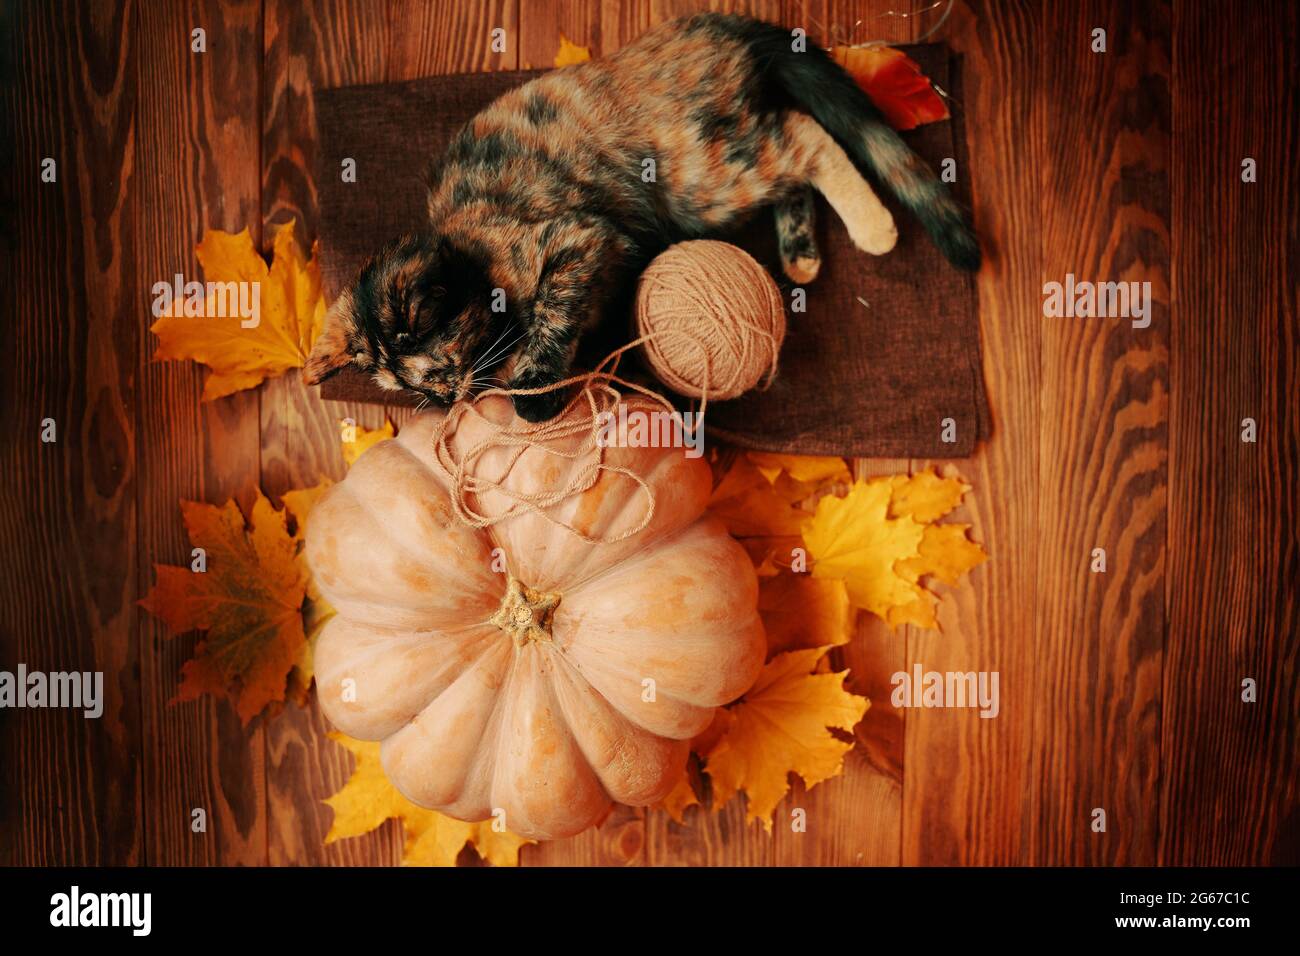 Gattino piccolo sta giocando con una palla di filo su un tappeto marrone. Grande zucca matura, gatto carino e foglie d'autunno gialle su sfondo di legno. Foto Stock